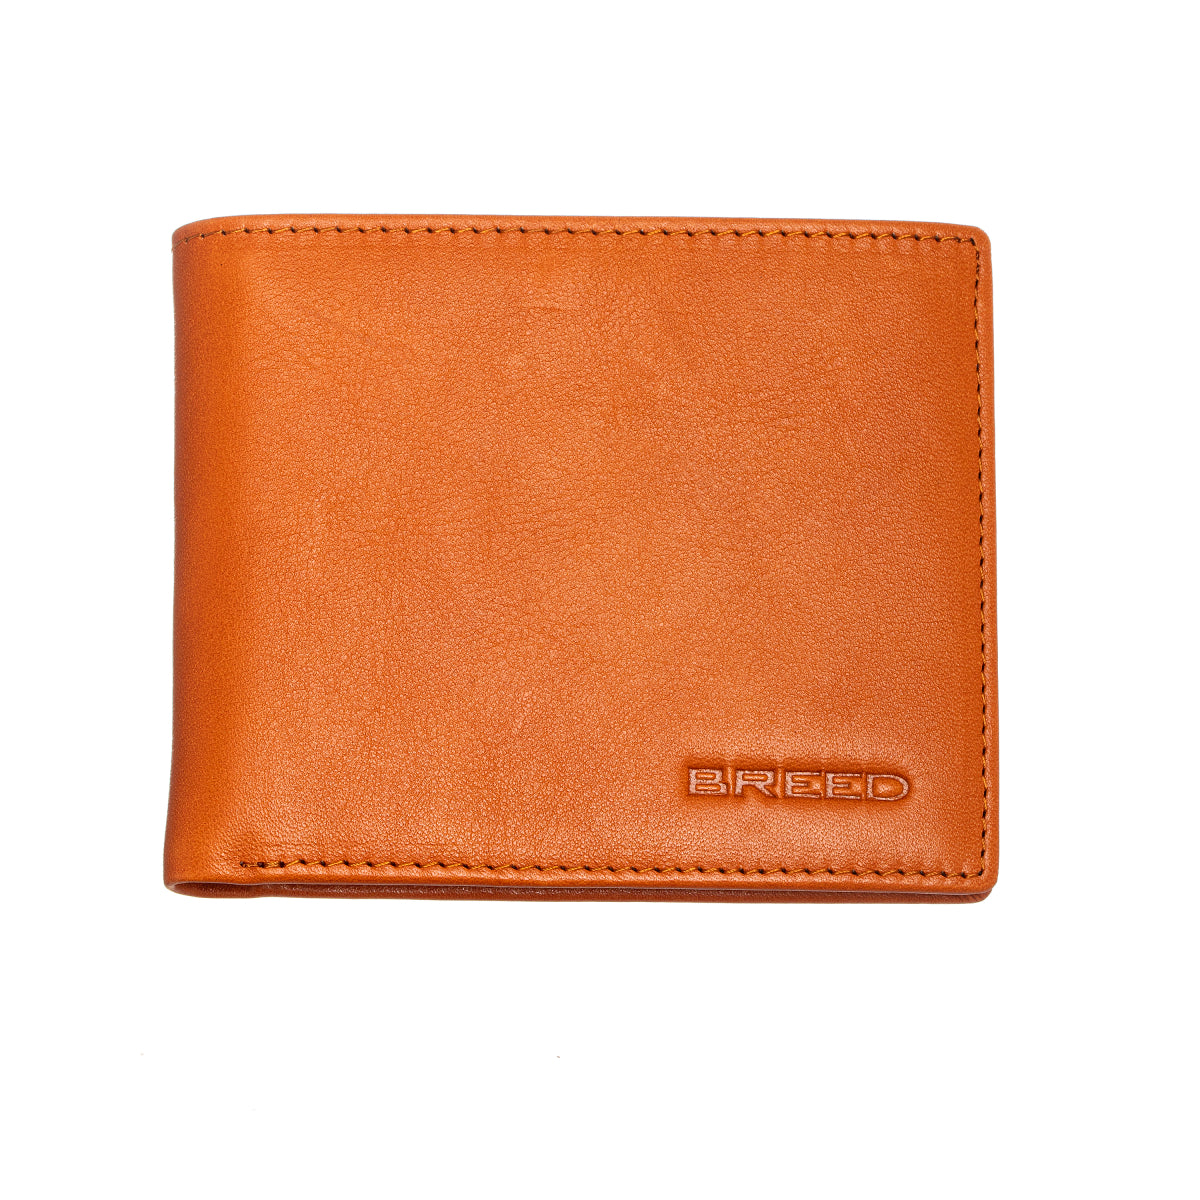 Breed Locke Genuine Leather Bi-Fold Wallet - Orange - BRDWALL001-ORG